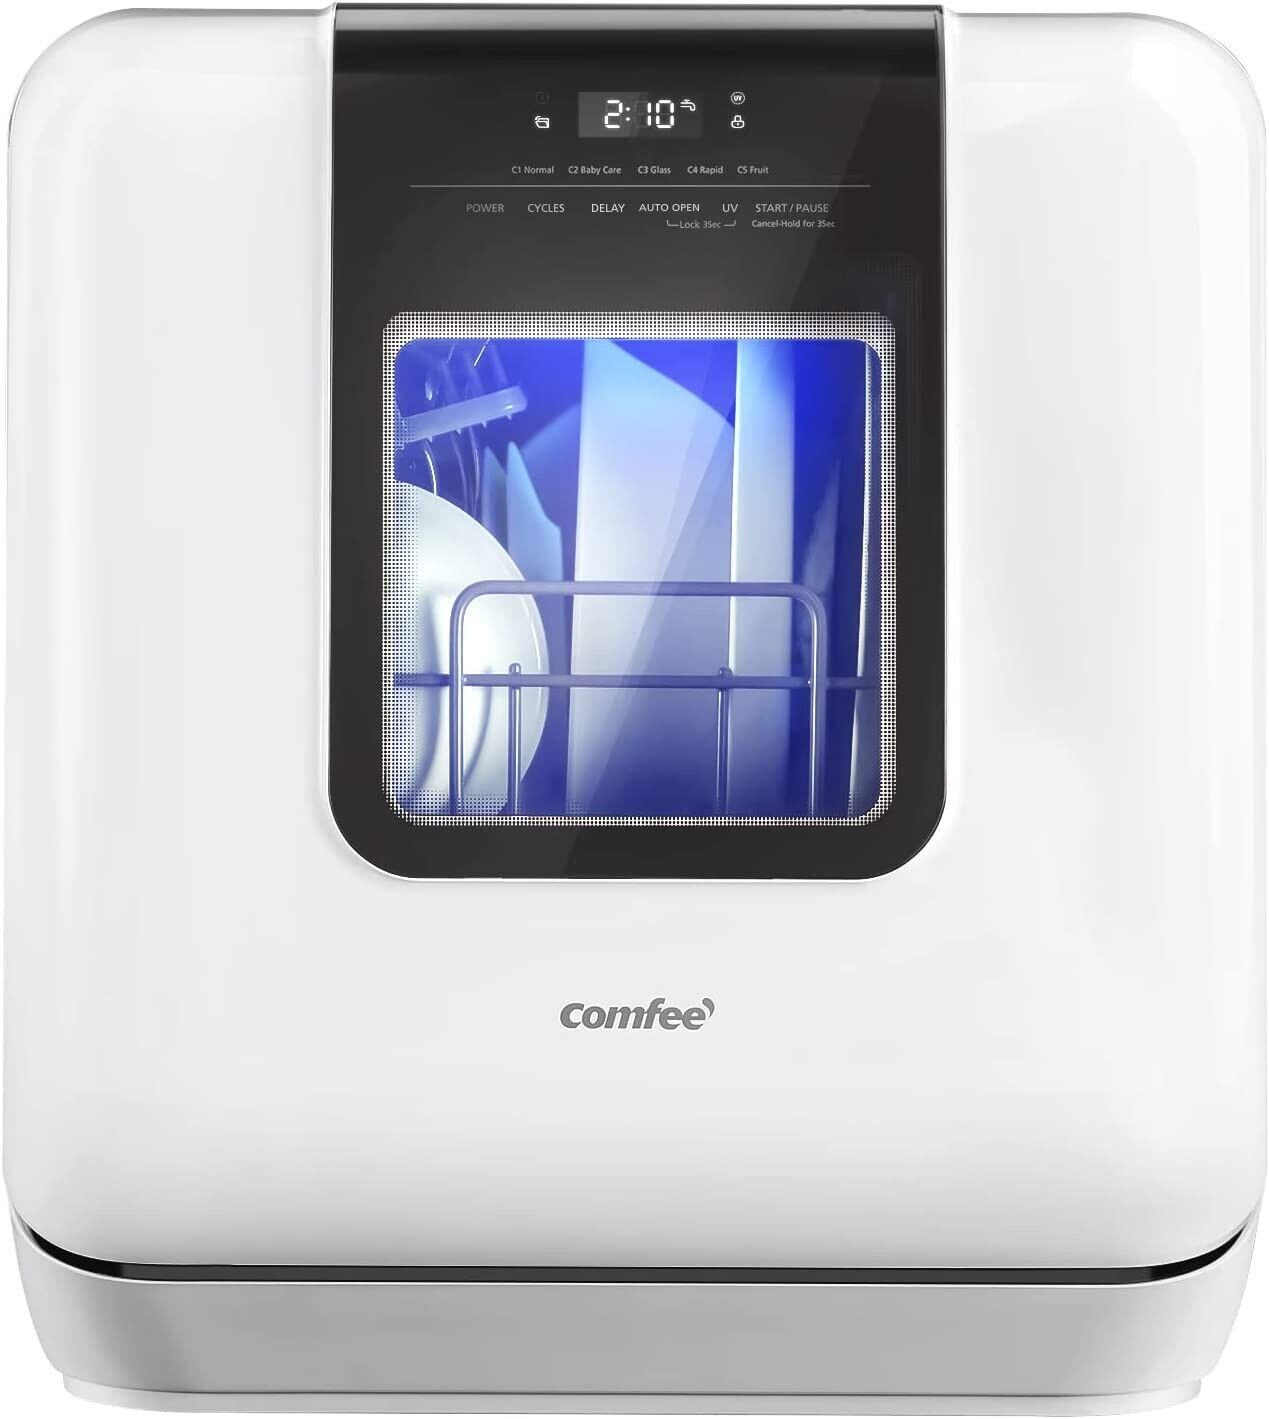 Comfee CDC17P2AWW Countertop Dishwasher